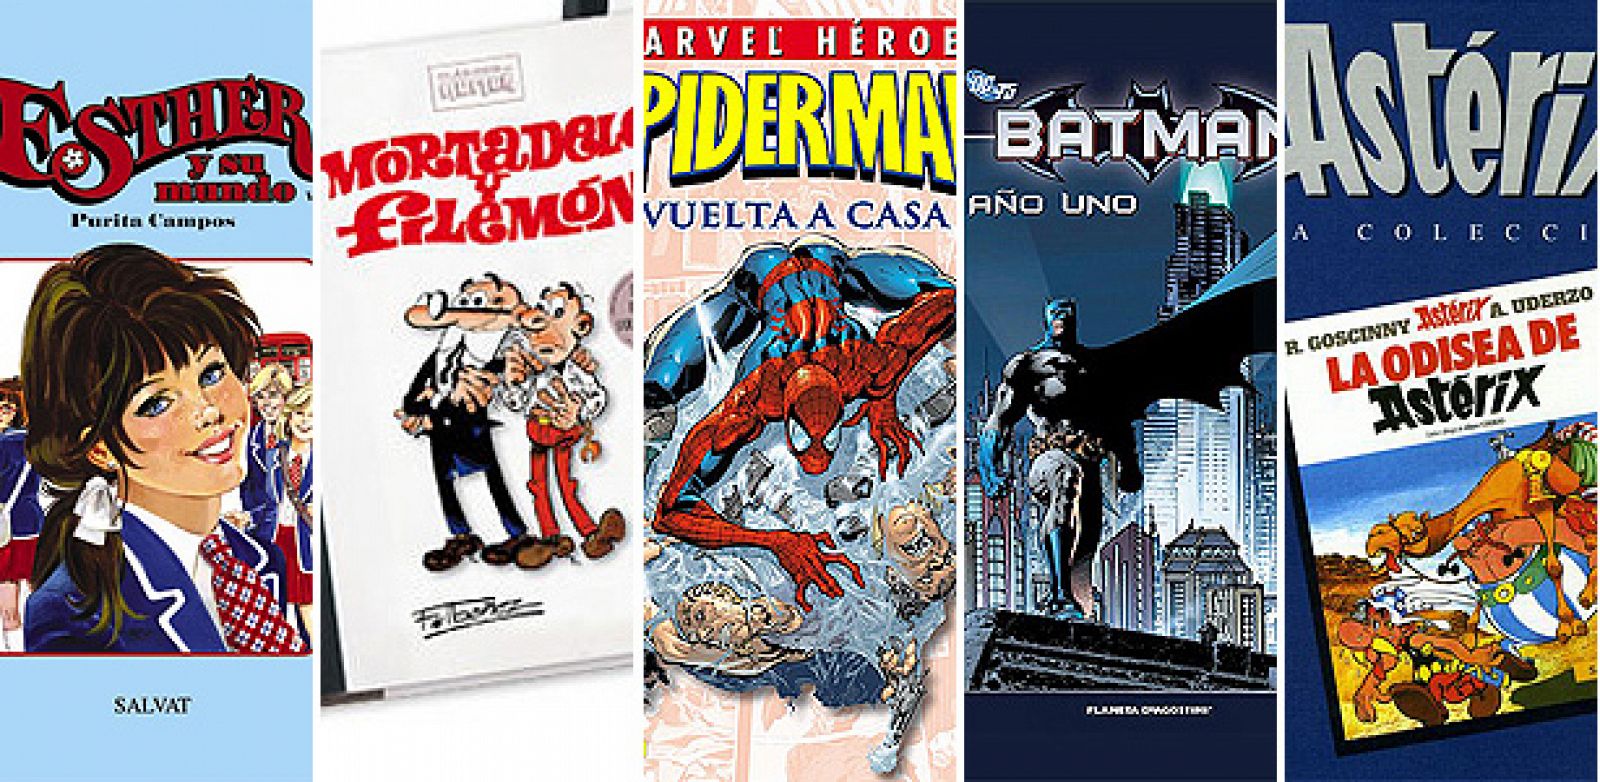 Esther, Mortadelo y Filemón, Marvel Héroes, Batman y Astérix, coleccionables para septiembre